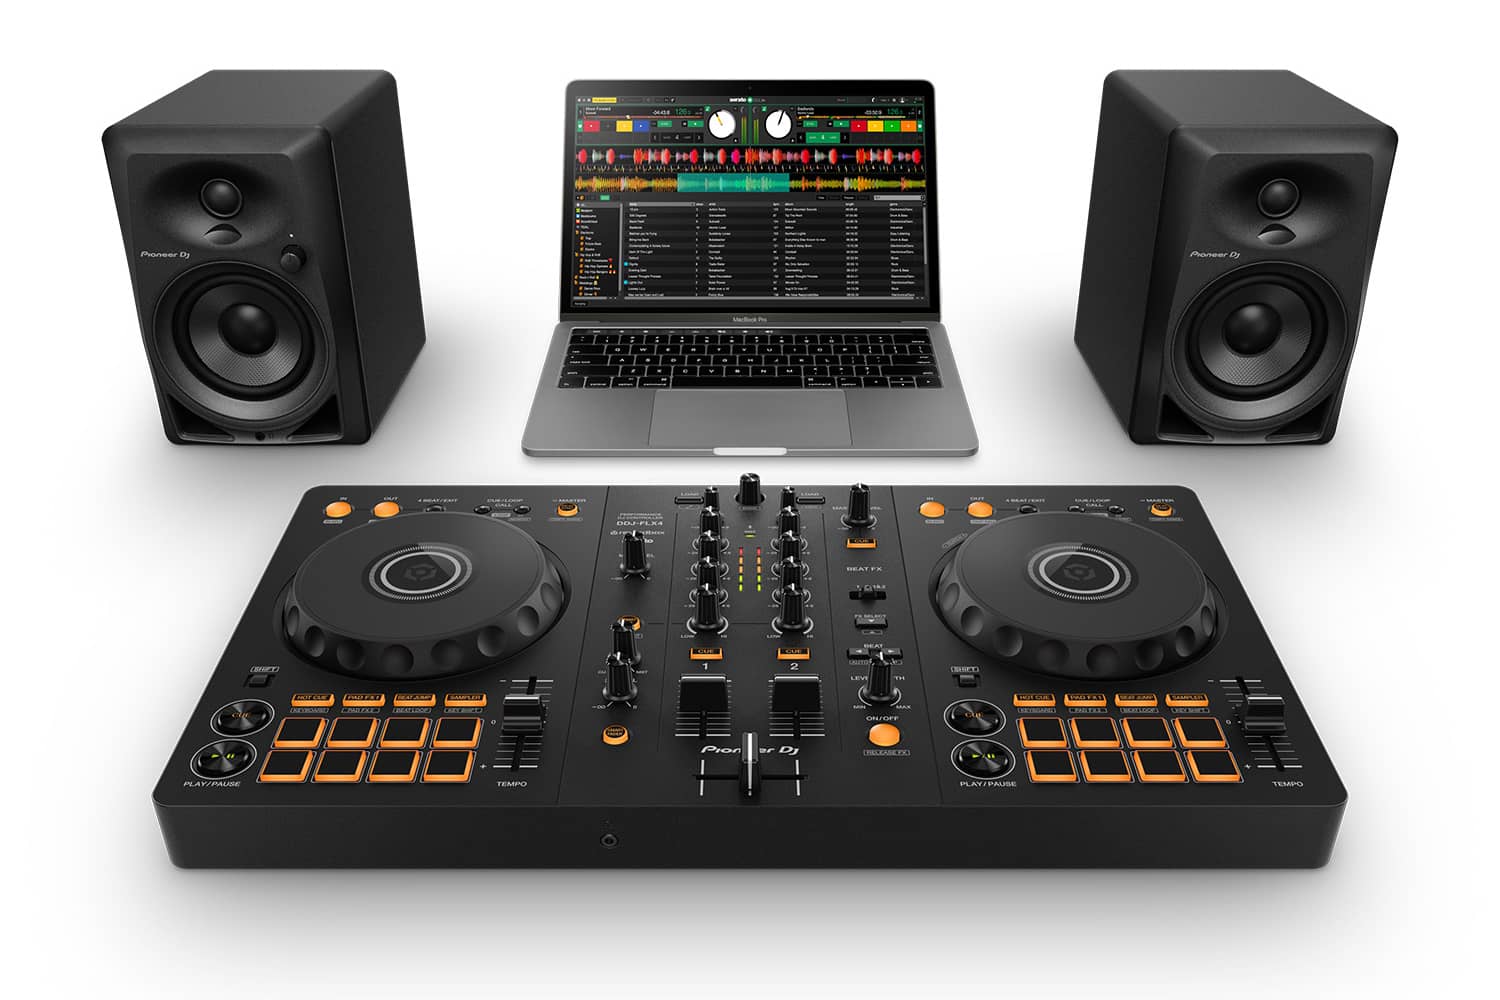 Configuración del Controlador DDJ-FLX4 con Serato DJ, laptop y monitores